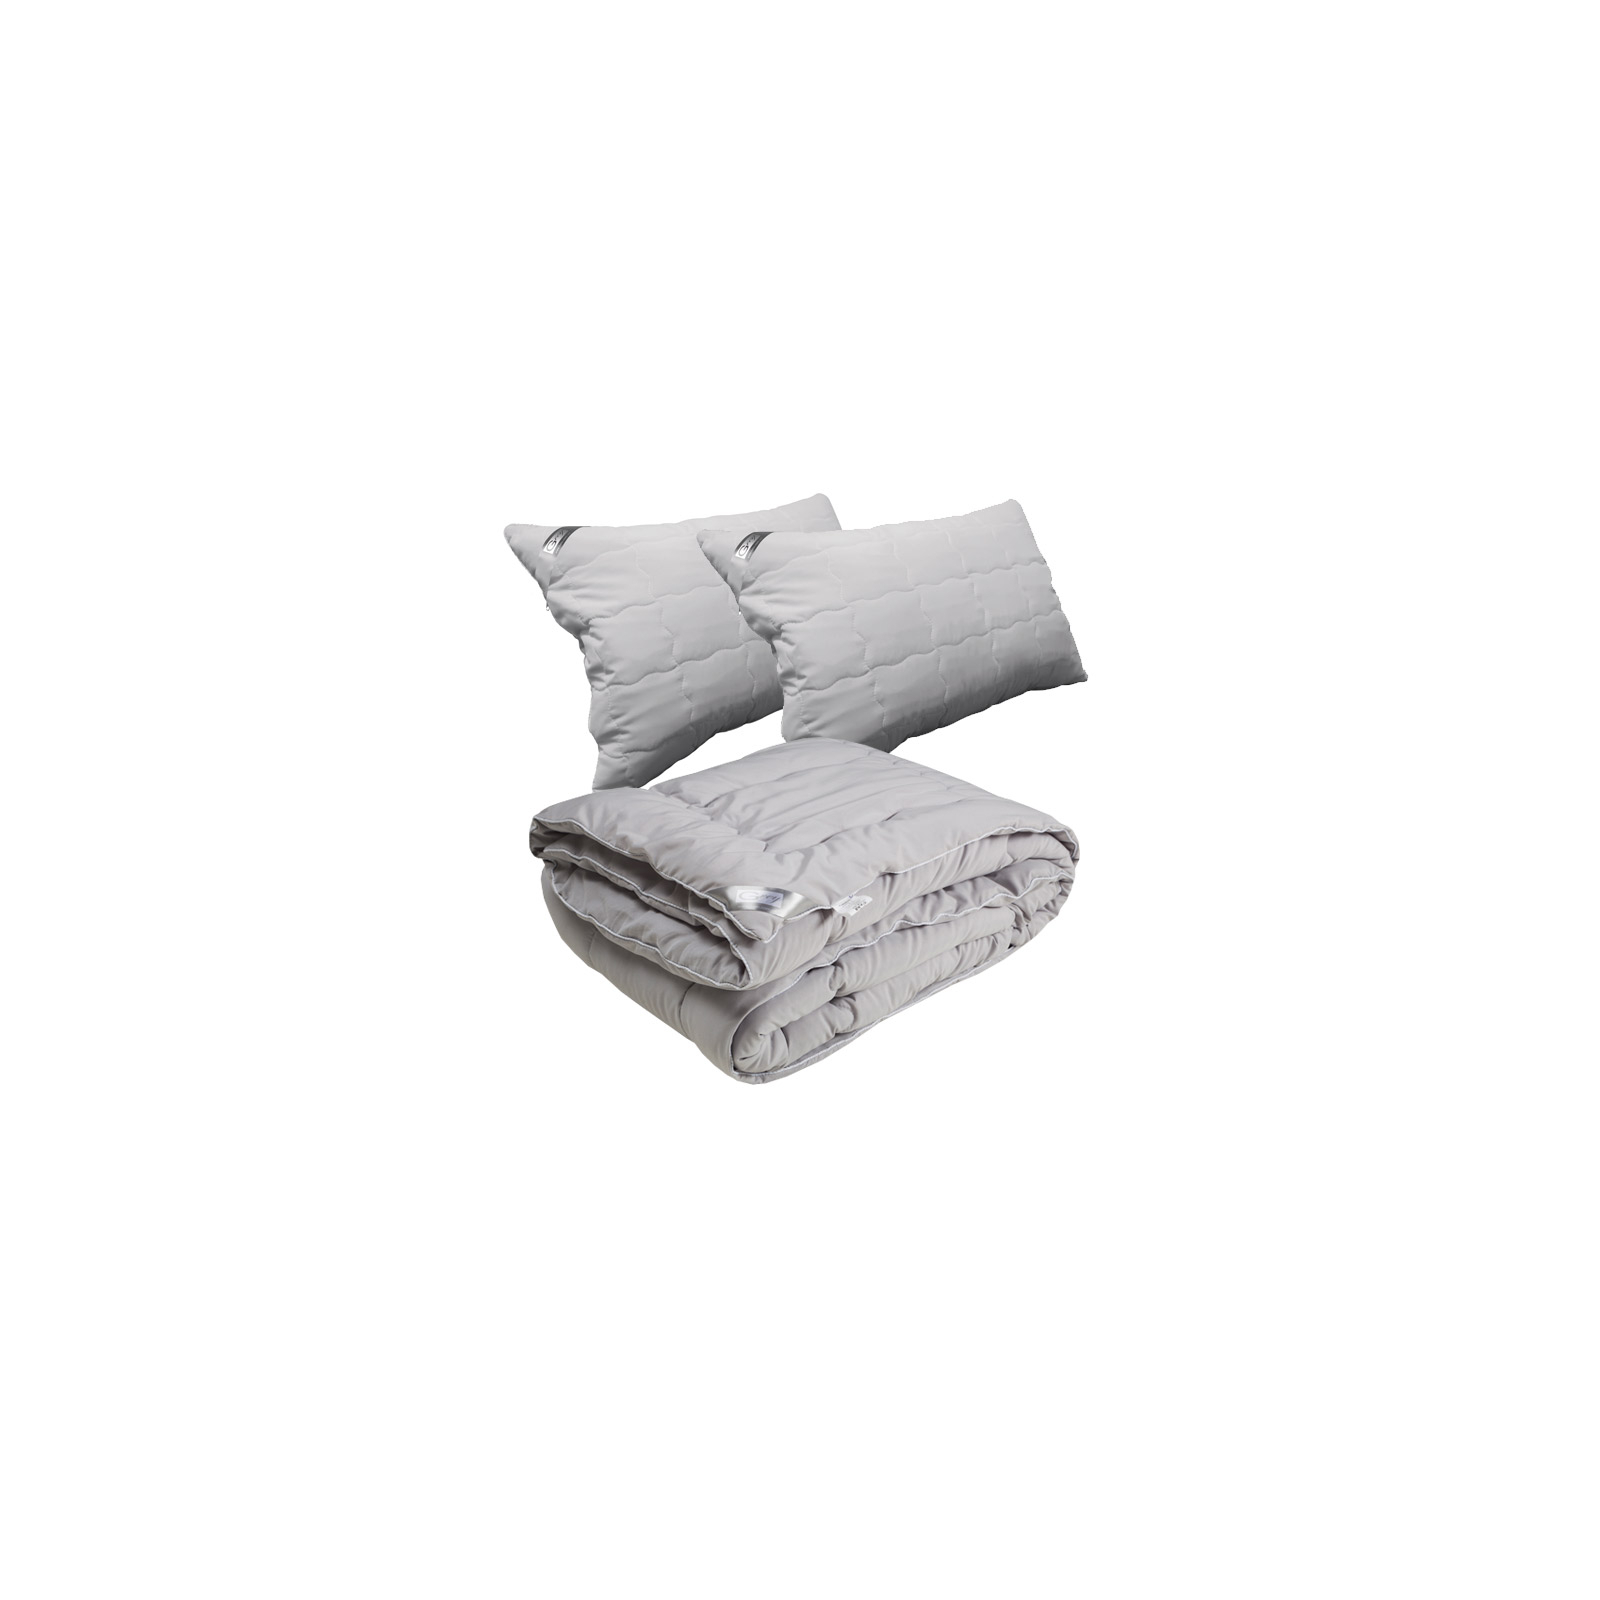 Одеяло Руно Демисезонная силиконовая Grey 200х220 см с двумя подушками 50х70 см (925.52Grey)